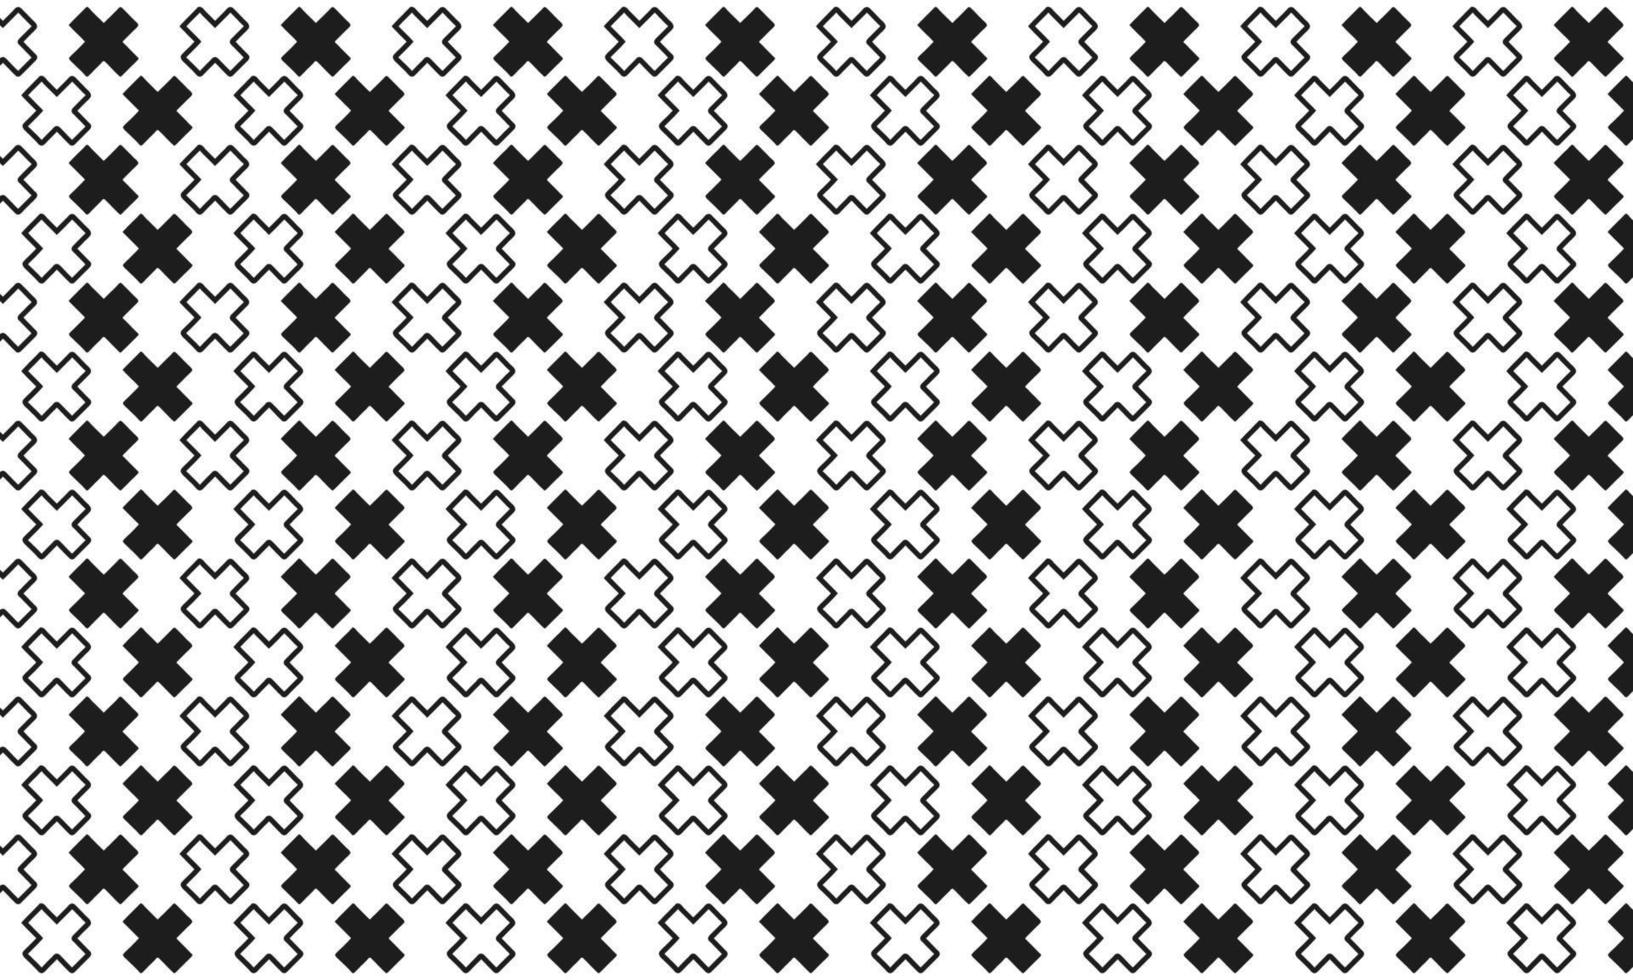 Cruz en blanco y negro de fondo transparente vector